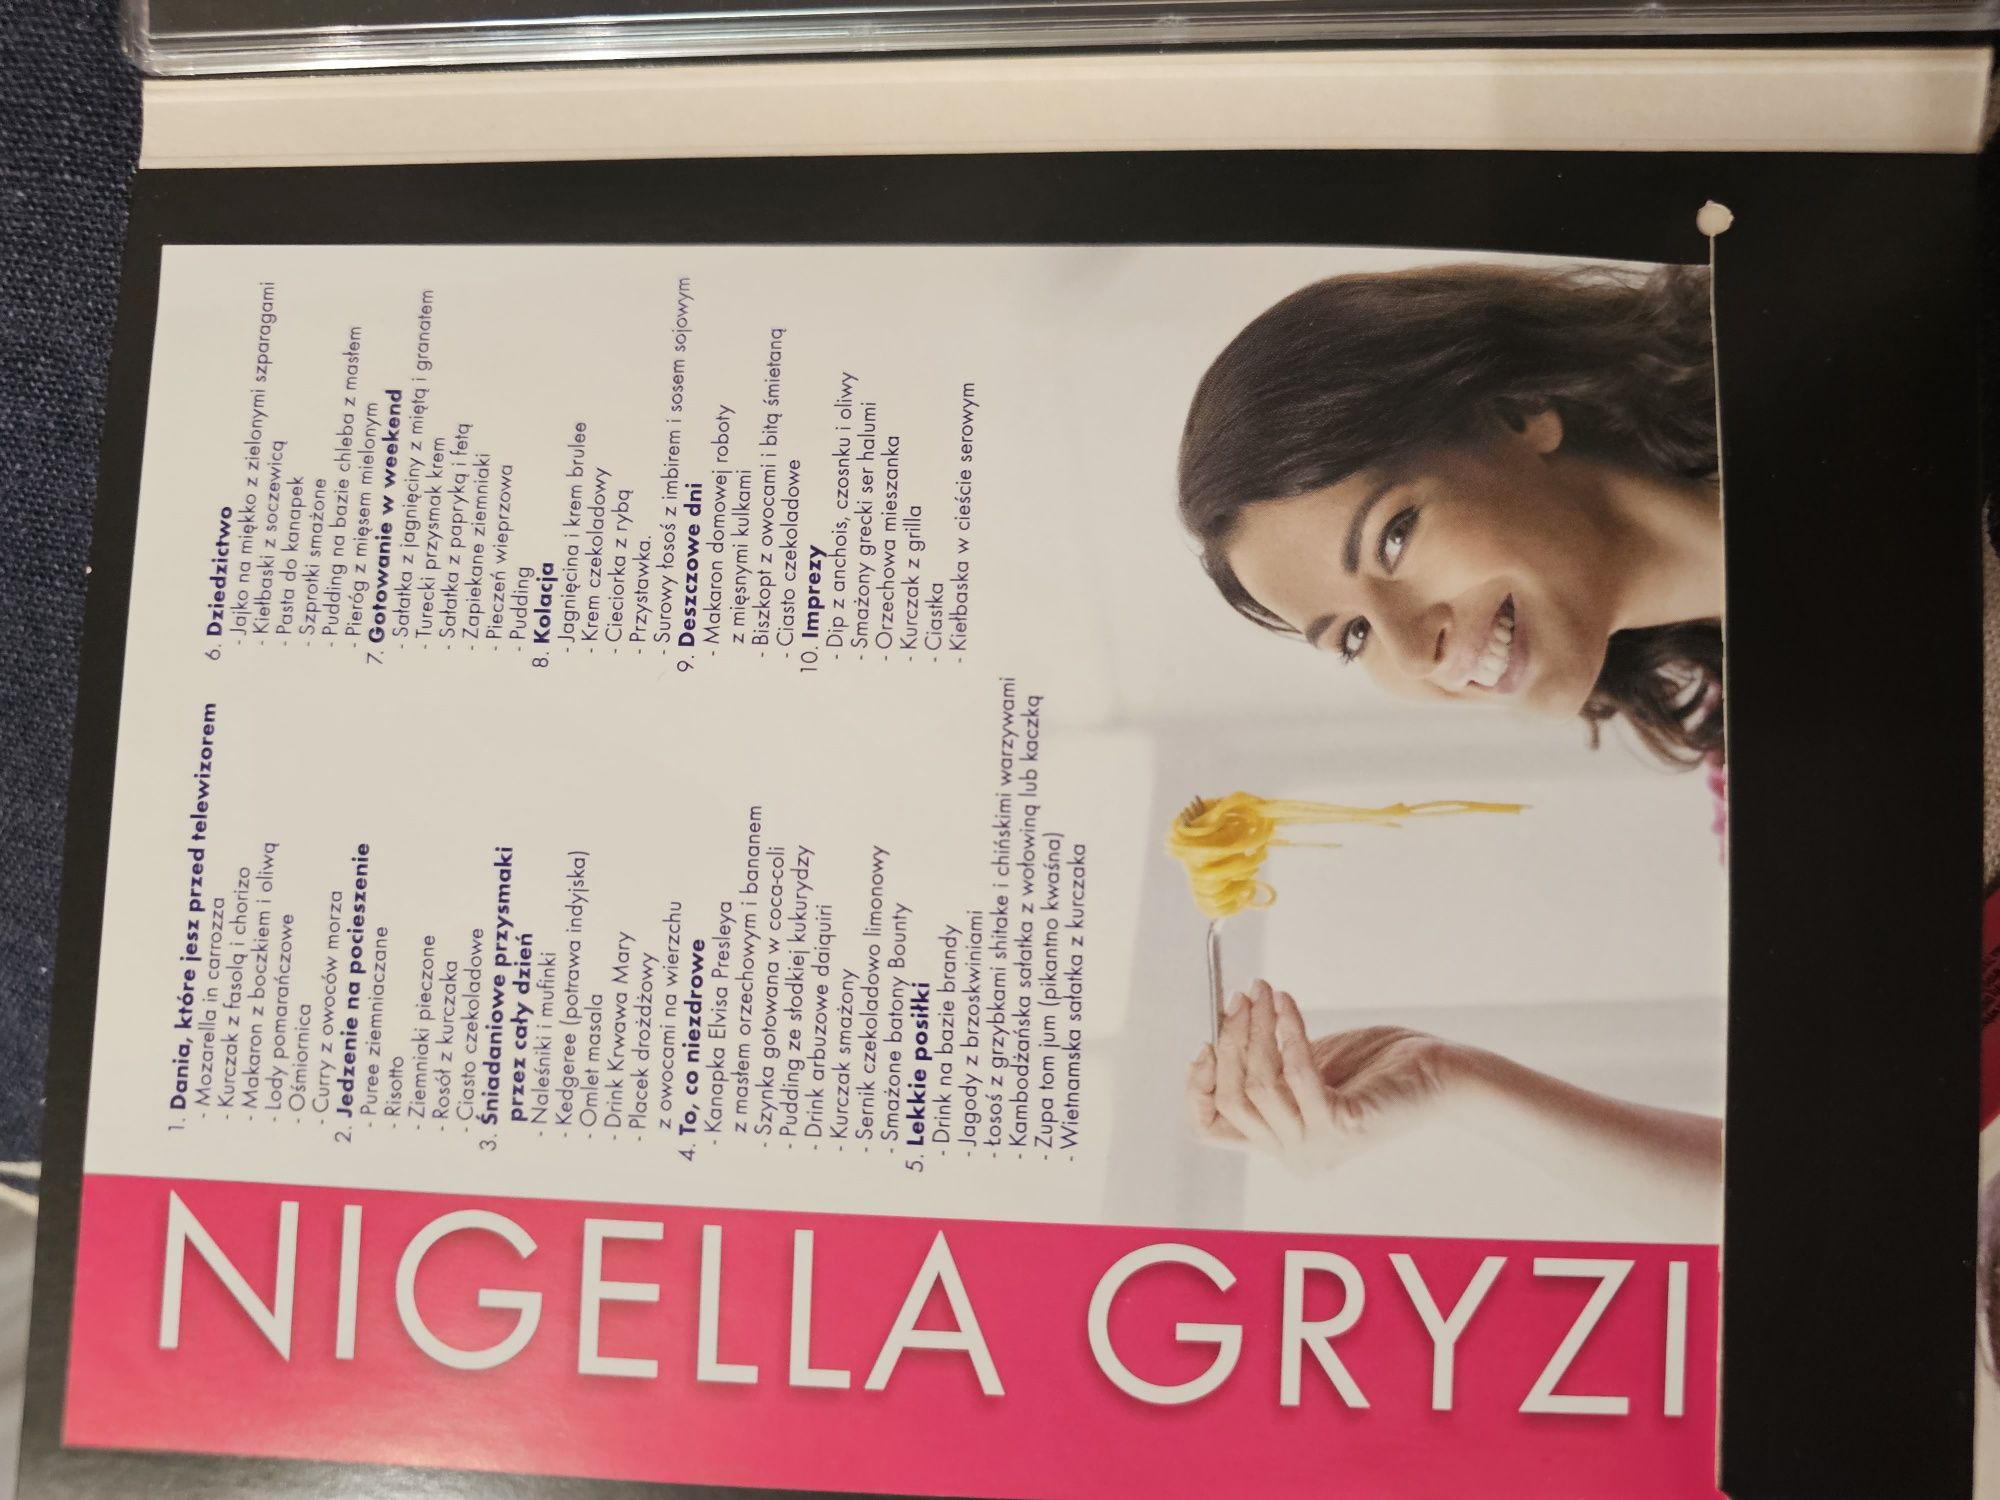 Nigella Lawson gryzie, na zawsze lato, ekspresowo, dvd płyty